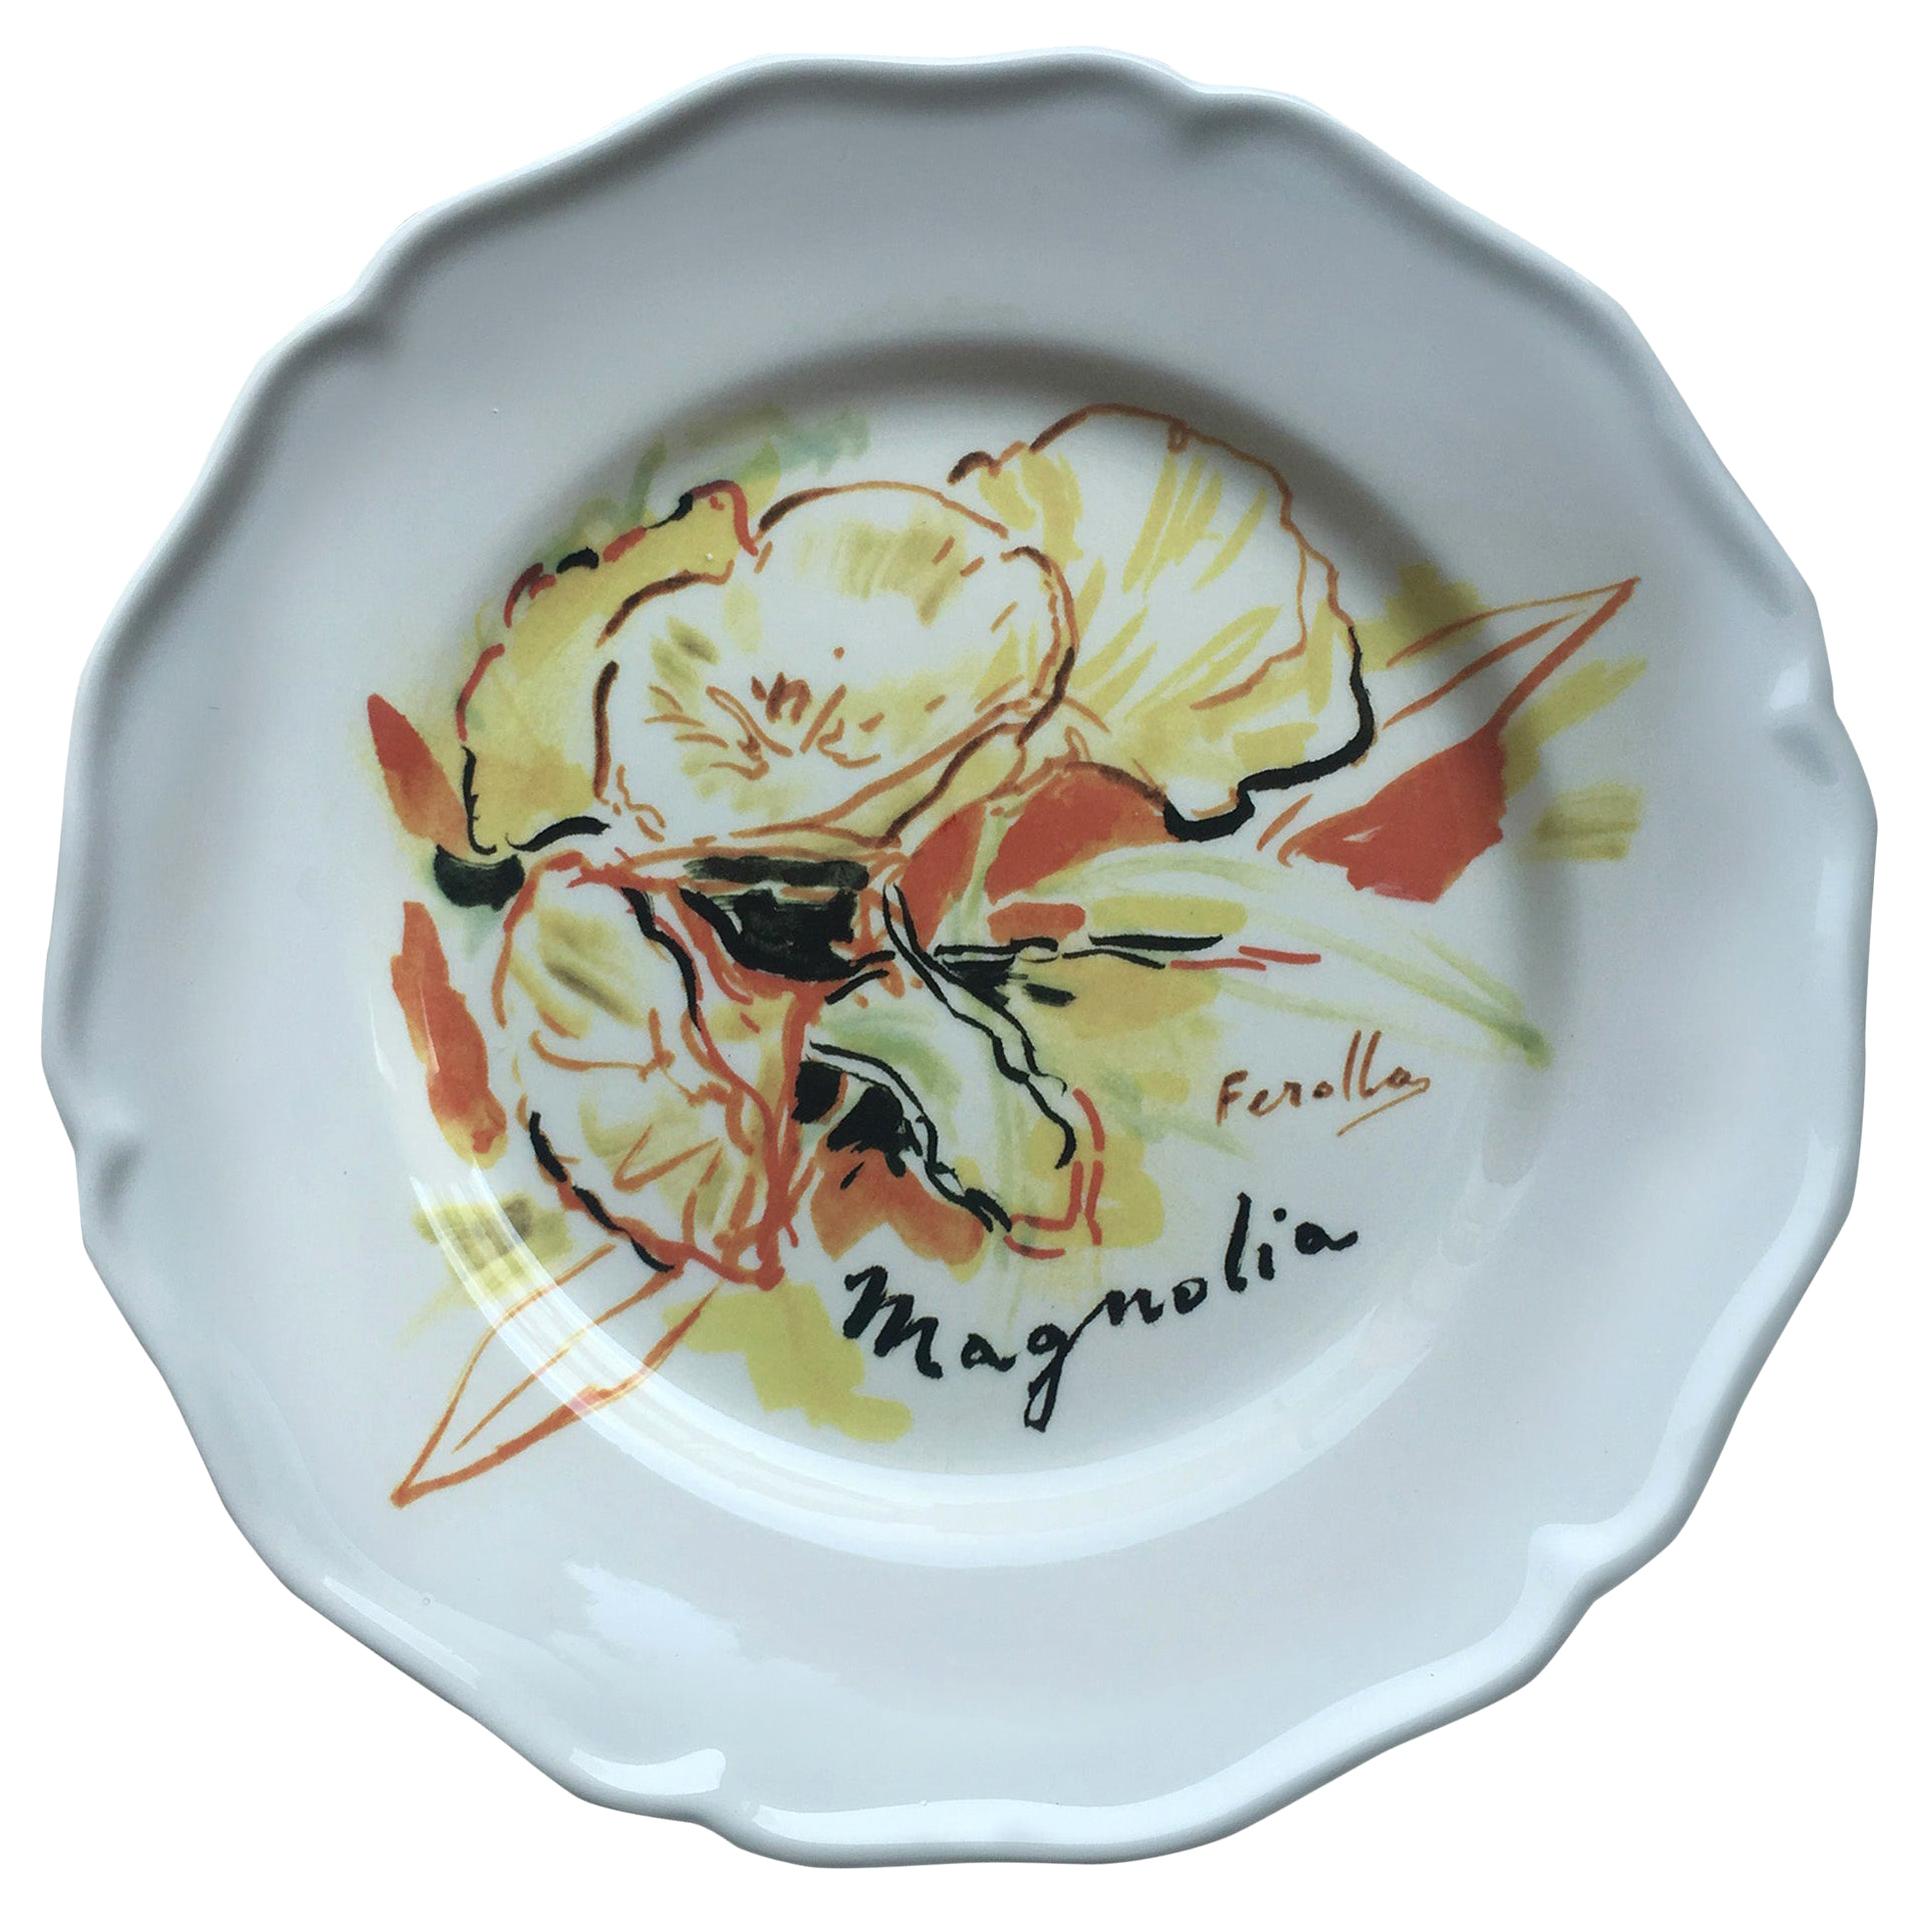 Les Ottomans Bosphorus Suite 'Magnolia Design' Ceramic Plate by Chez Dede